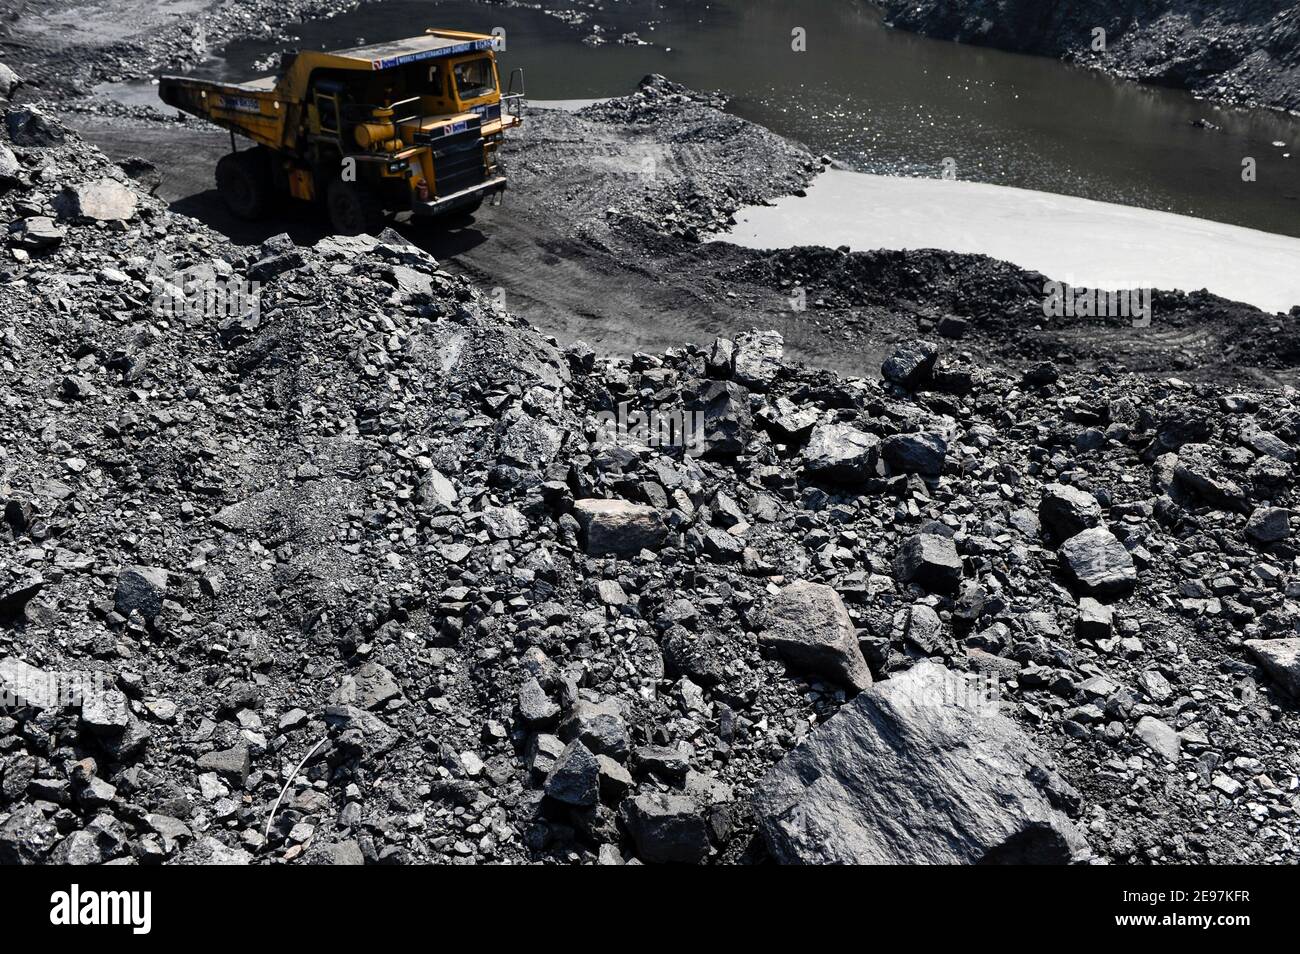 INDIA Dhanbad, estrazione di carbone a getto aperto di BCCL Ltd un'azienda di CARBONE INDIA, grande dumper BEML / INDIEN Dhanbad , offener Kohle Tagebau von BCCL Ltd. Ein Tochterunternehmen von Coal India Foto Stock